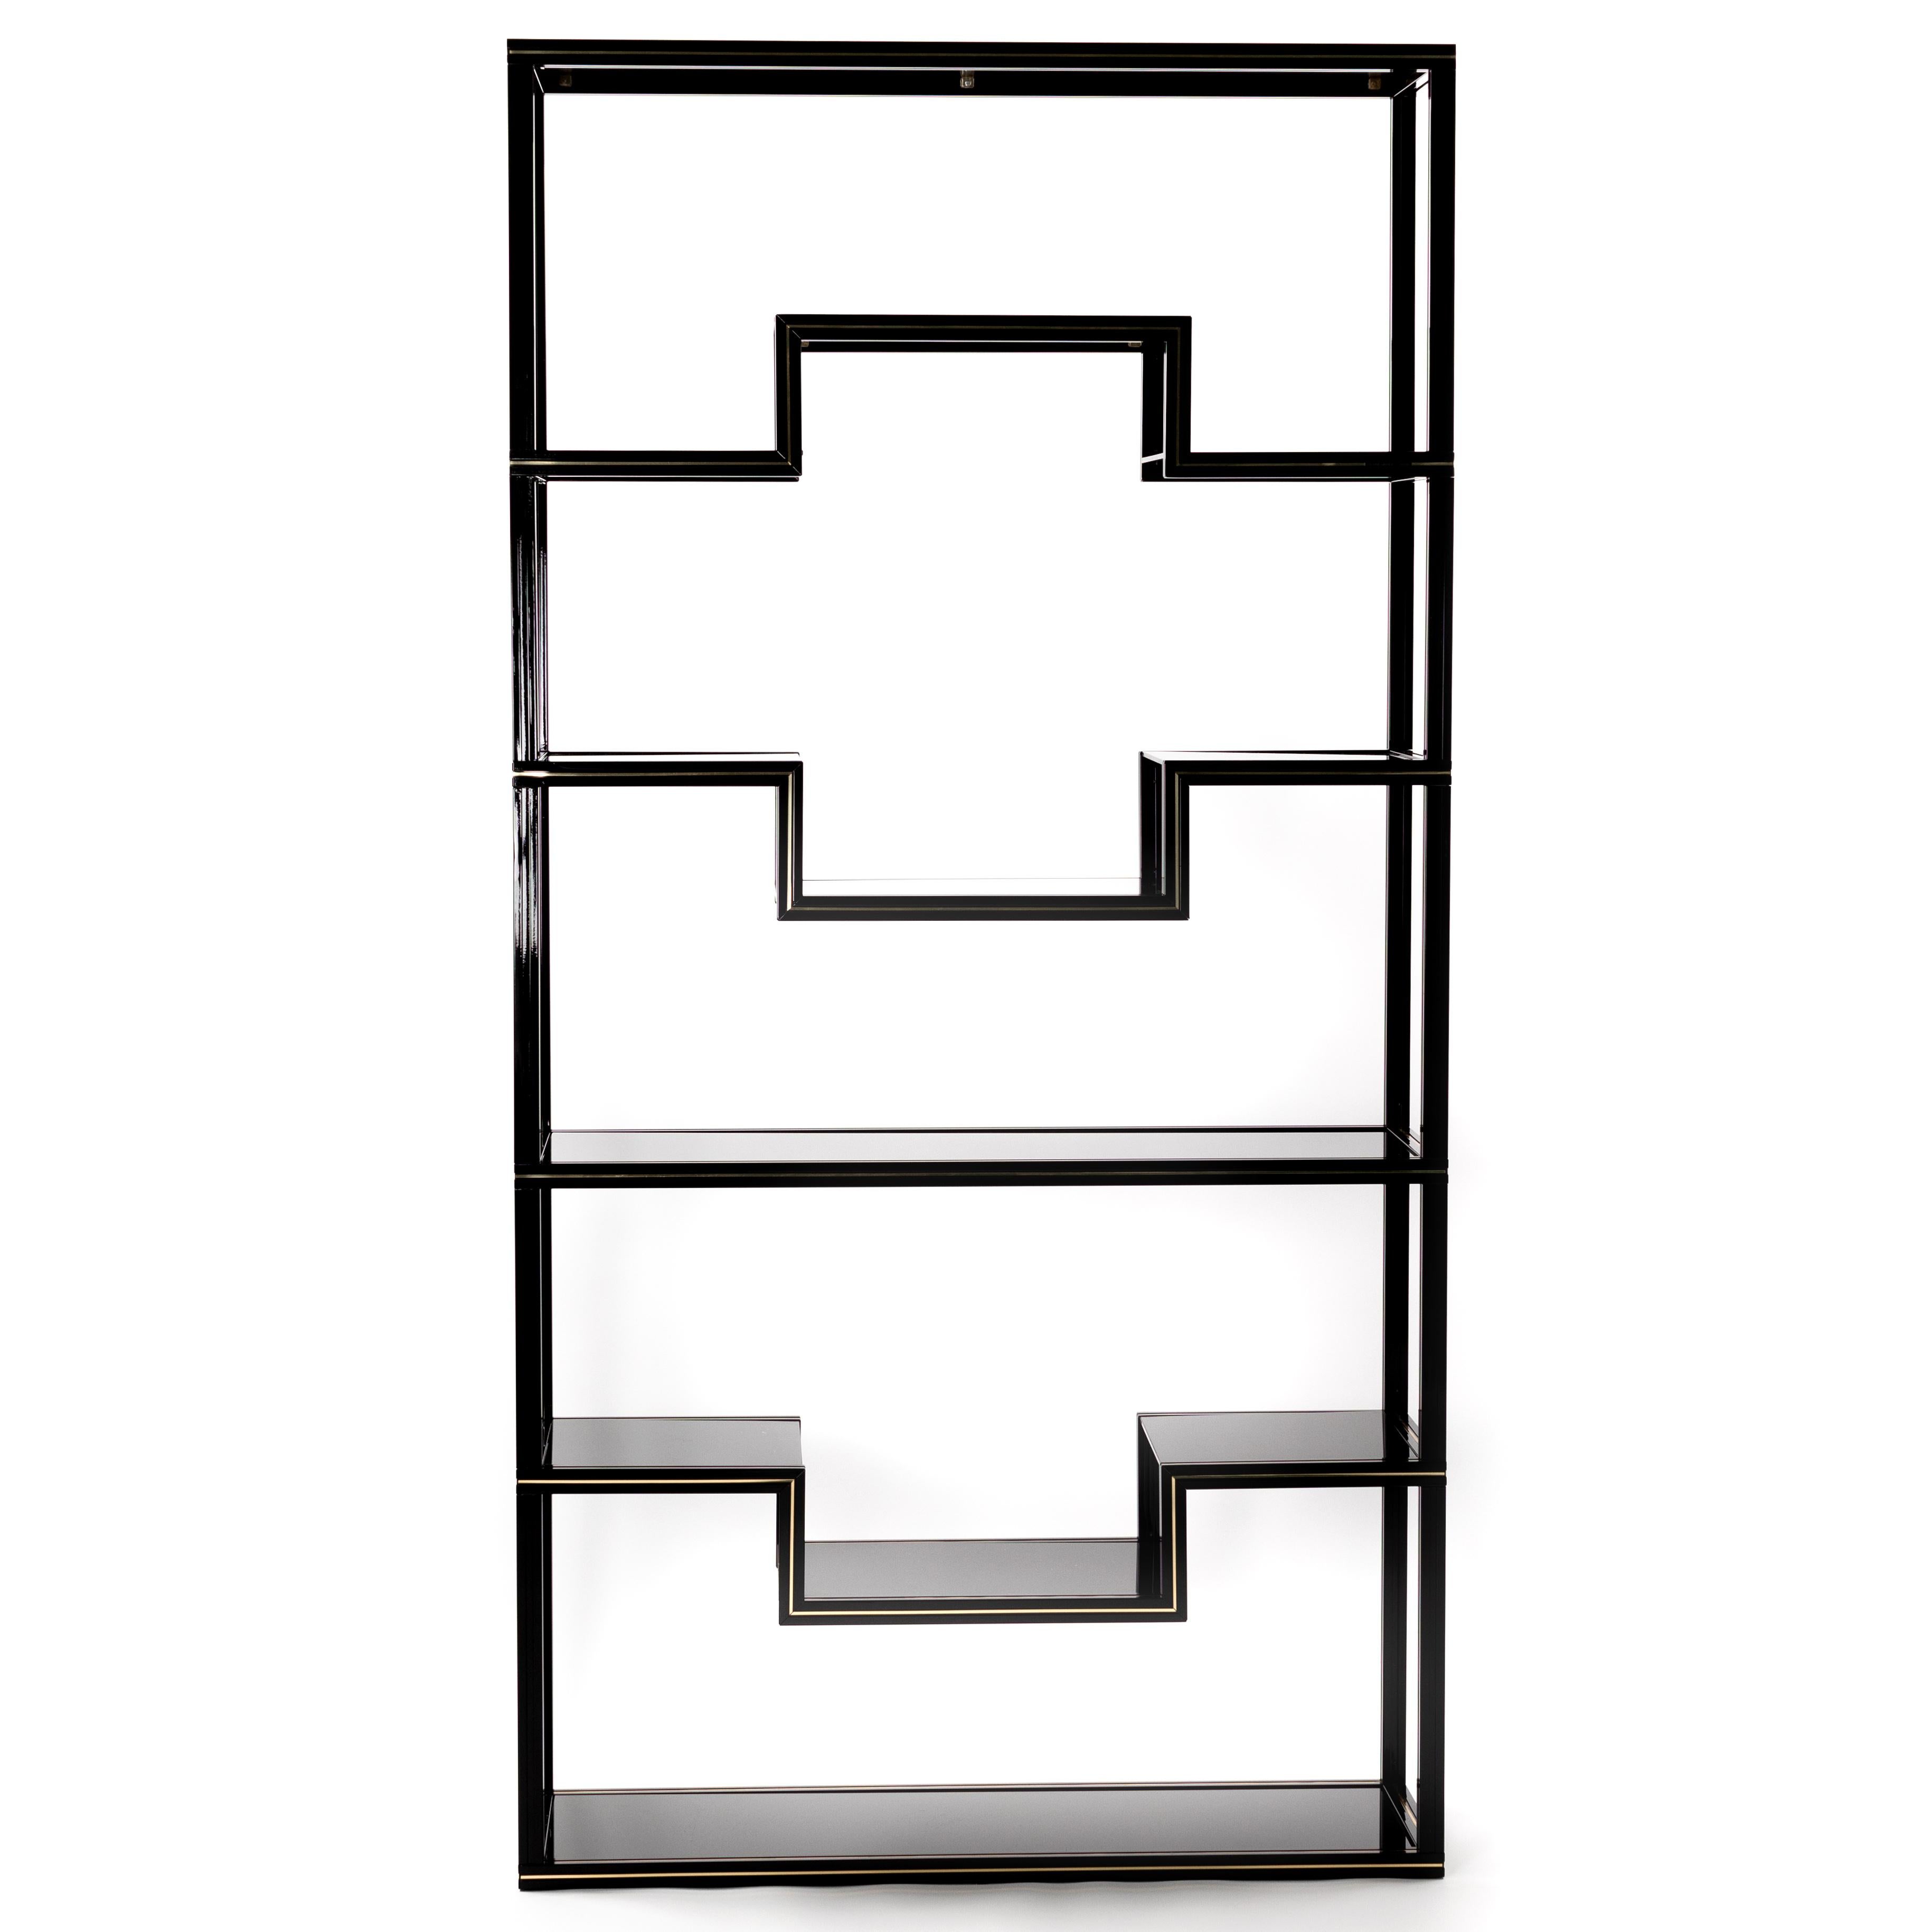 Extravagante, schwarz lackierte Aluminium-Etagere von Pierre Vandel mit Messing-Details und schwarzen Glasböden. 
Etikett - Pierre Vandel Paris - ca. Ende der 1970er Jahre.
Die klaren Linien dieses Regals eignen sich hervorragend für die